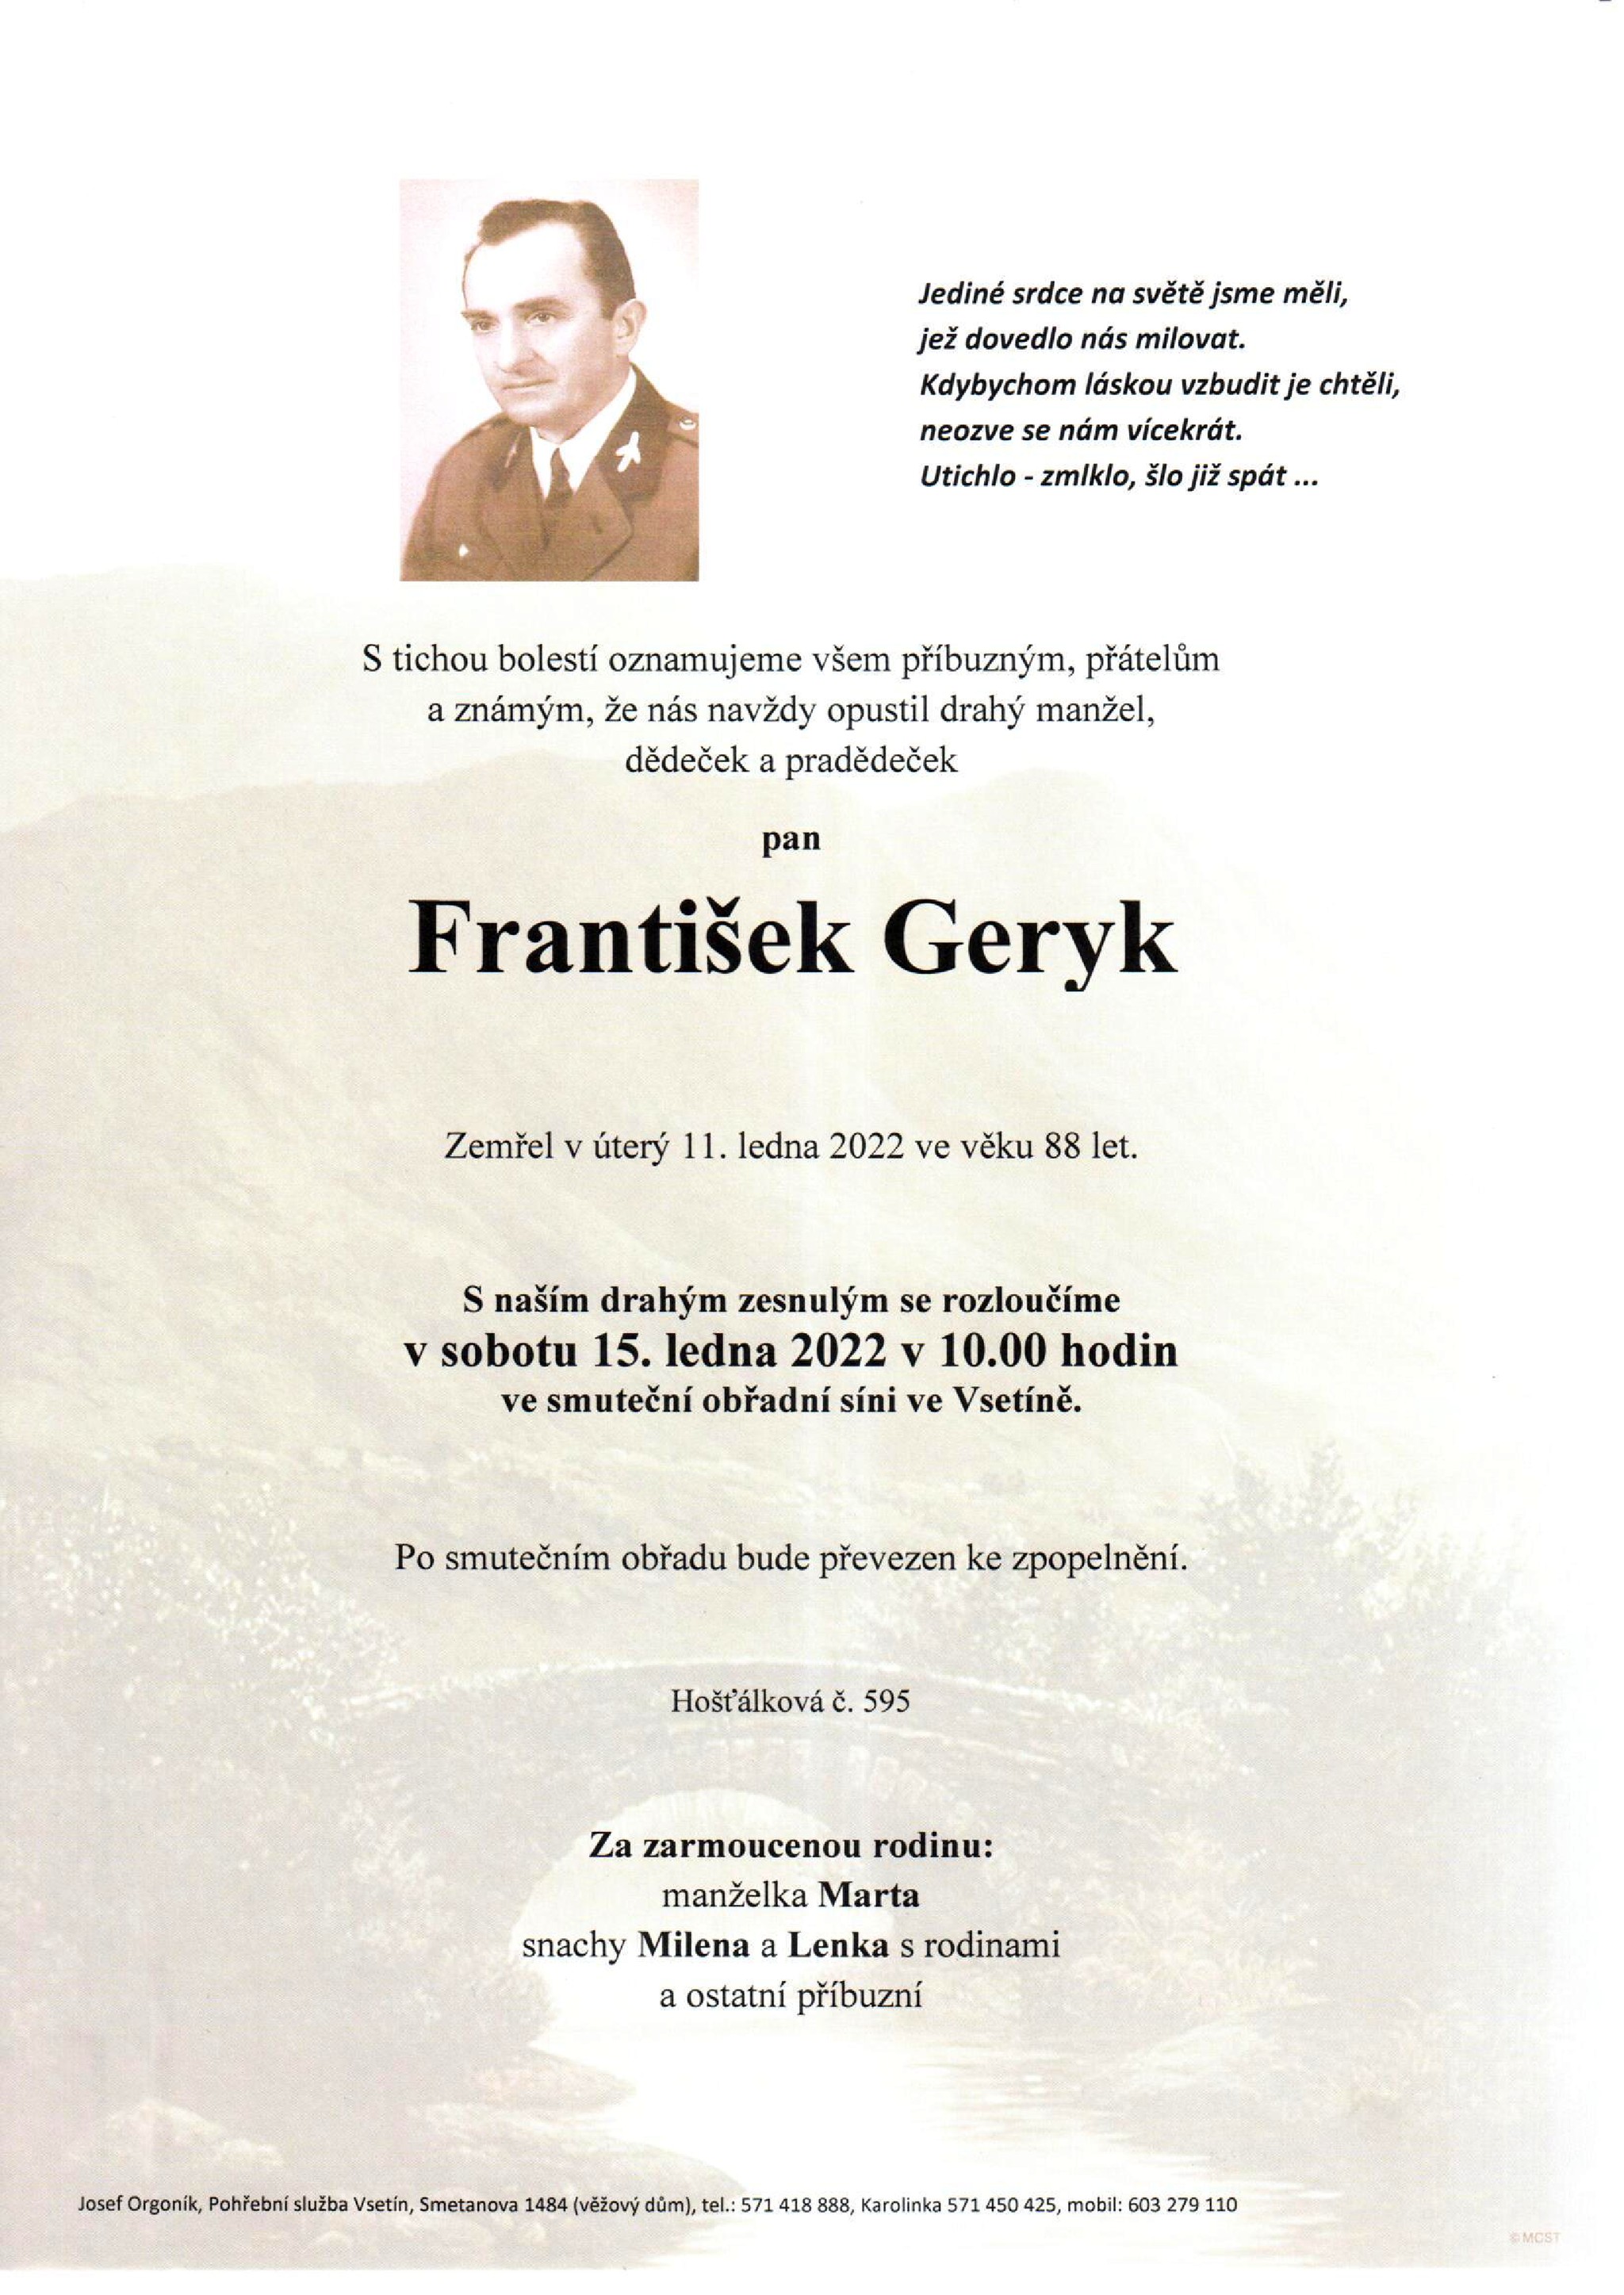 František Geryk